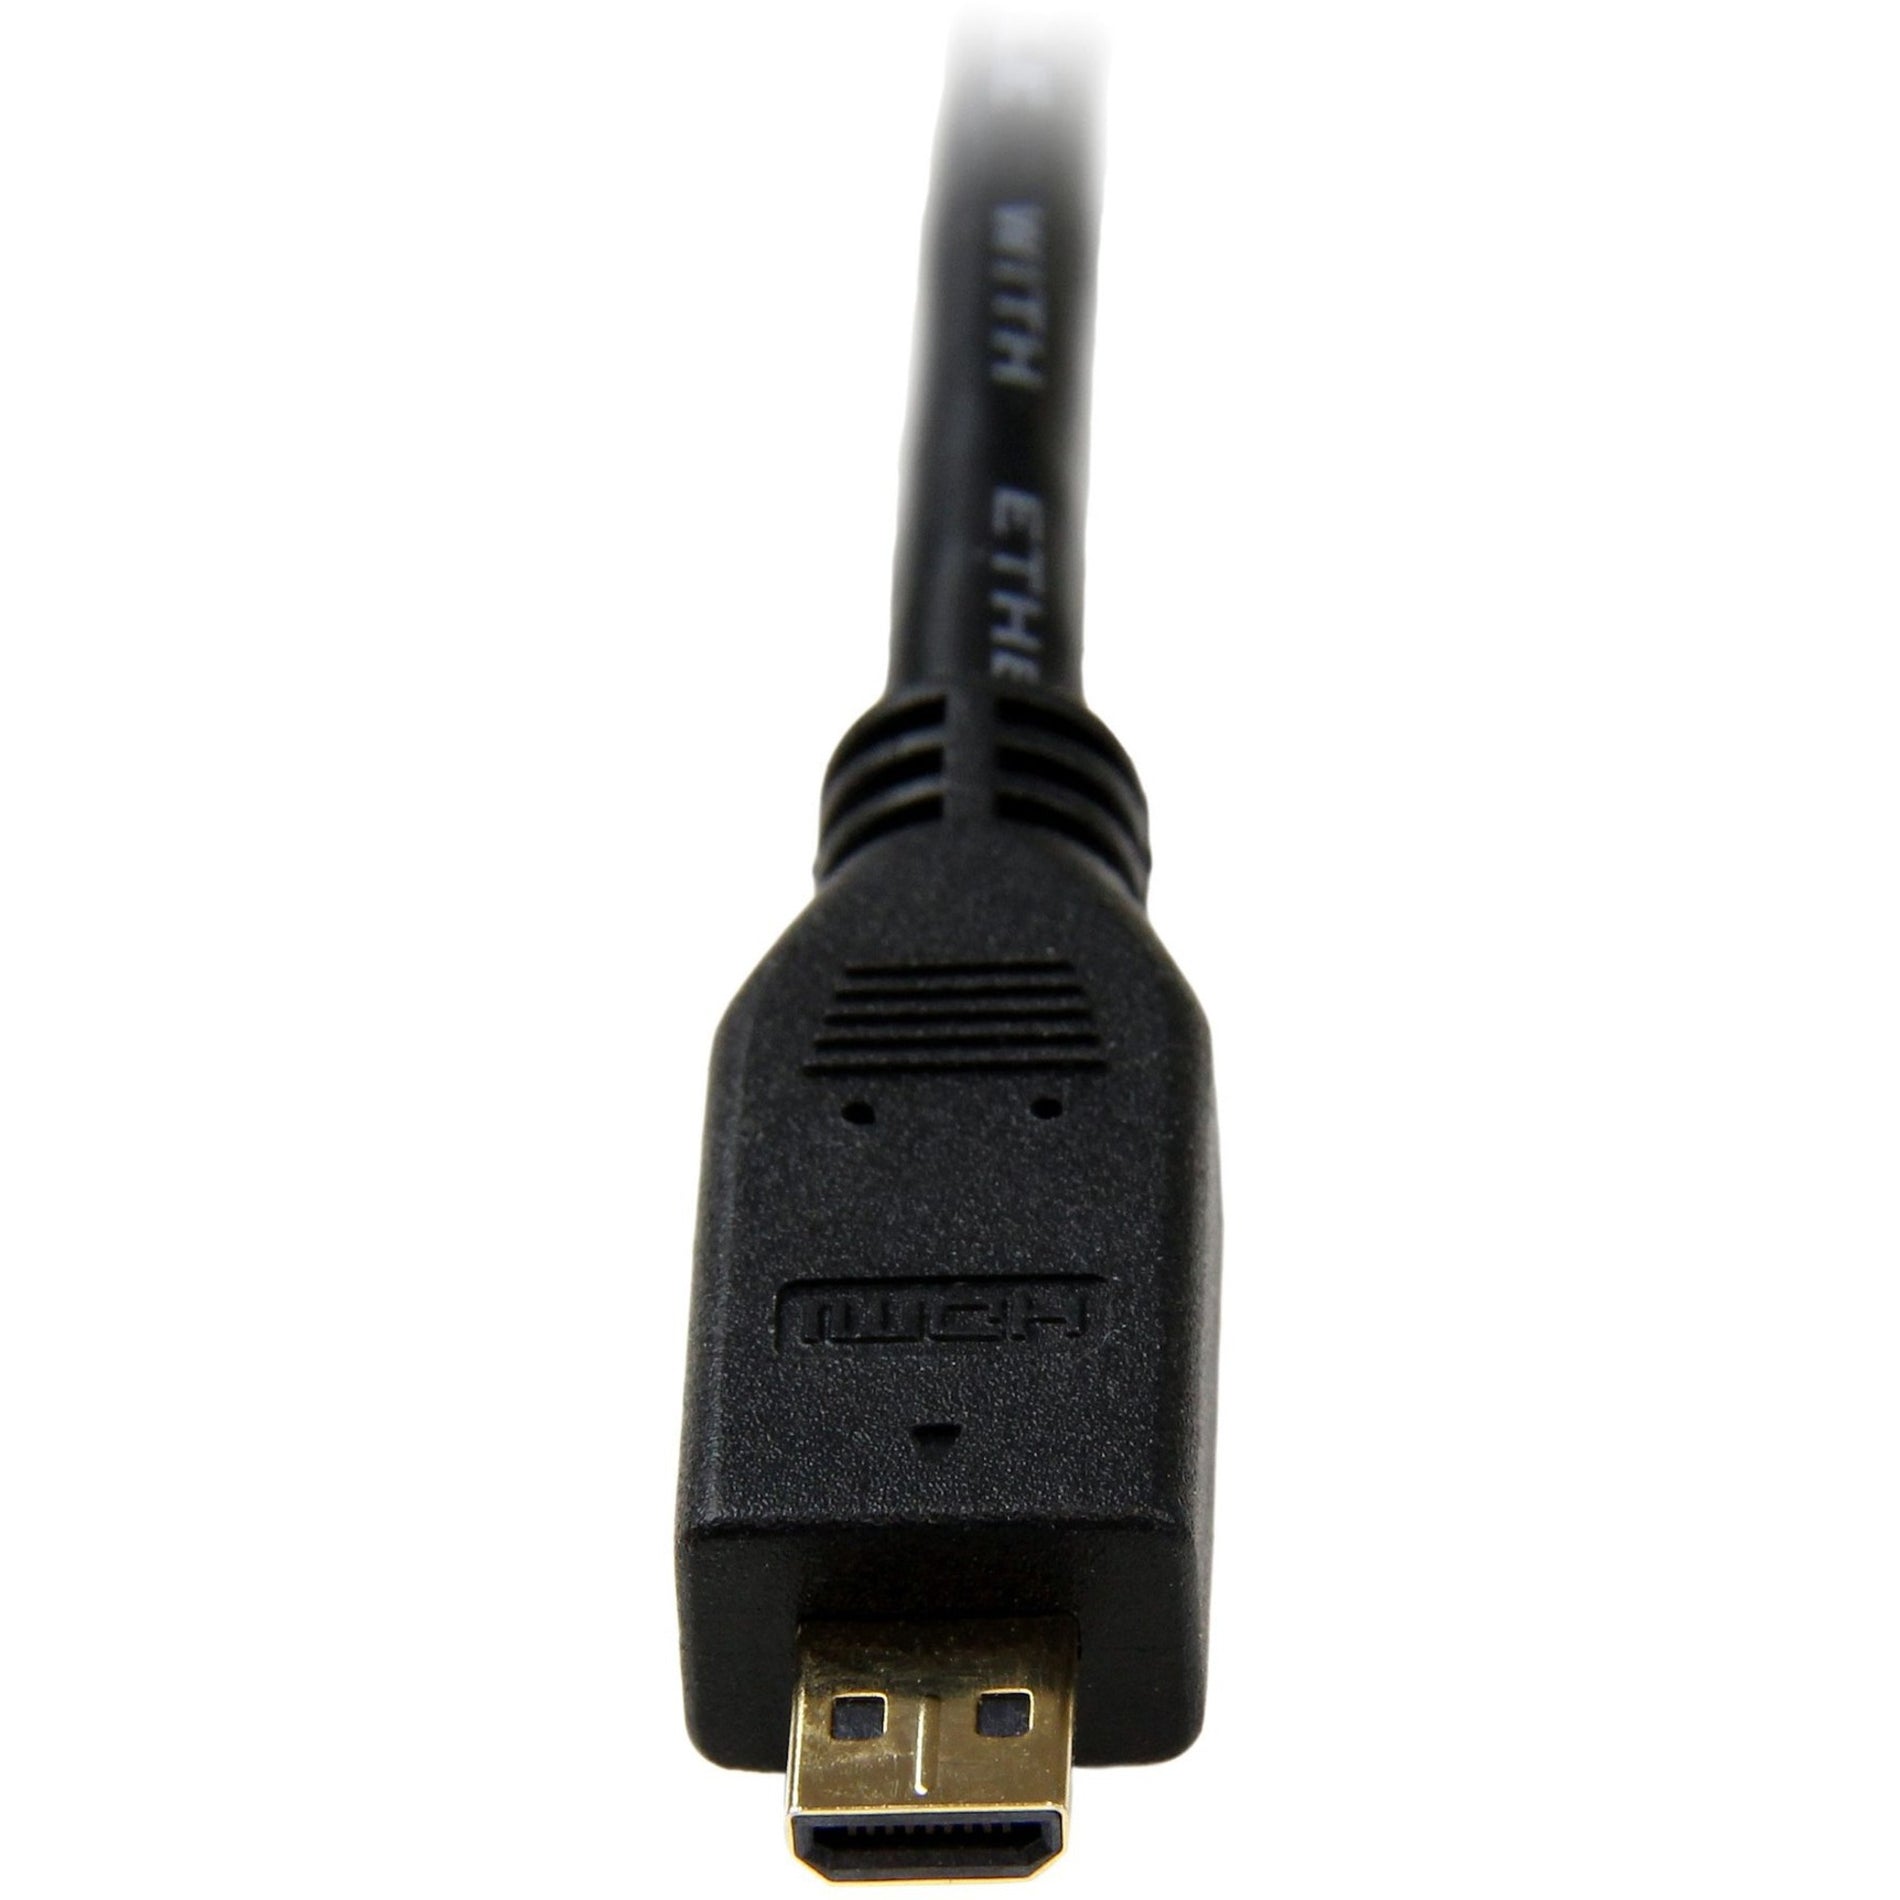 StarTech.com HDMIADMM3 3 ft High Speed HDMI-Kabel mit Ethernet - HDMI zu HDMI Micro - M/M 4K unterstützt vergoldete Stecker Schwarz